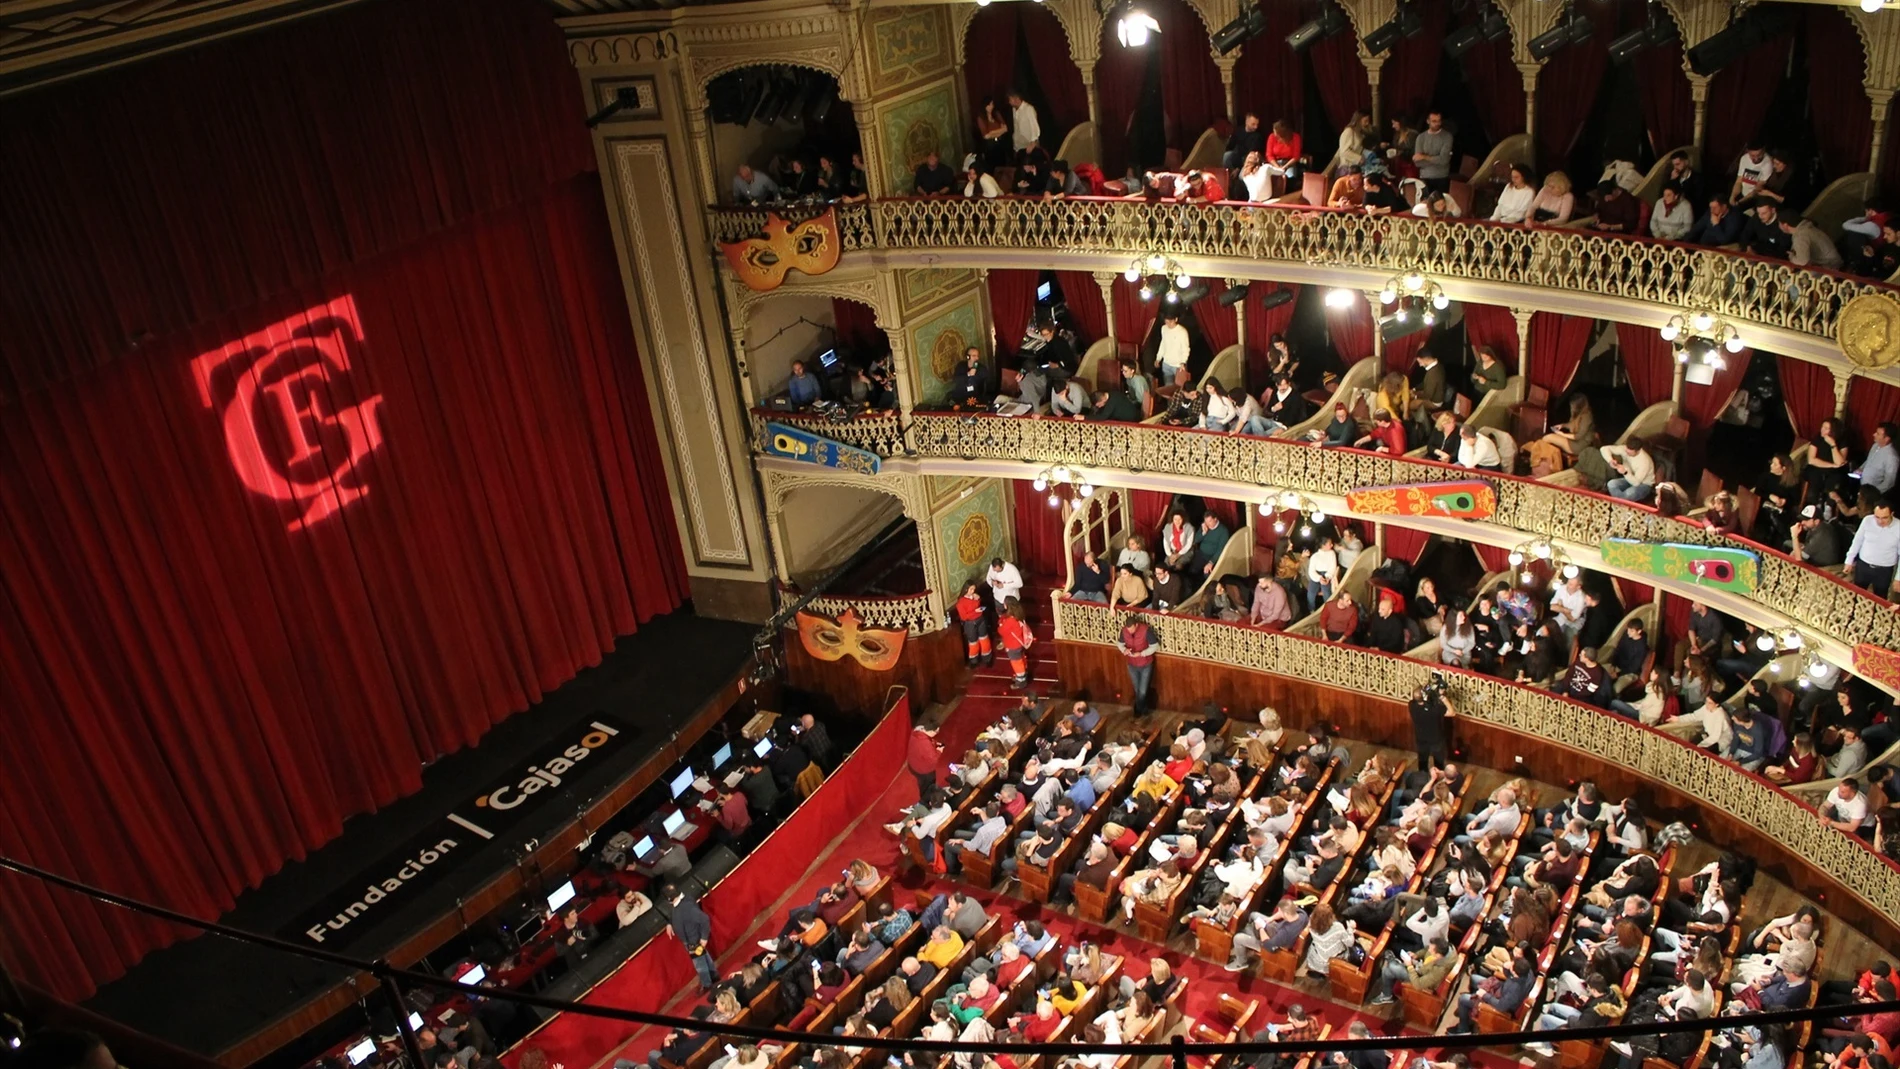 Imagen del interior del Gran Teatro Falla en una función de Carnaval